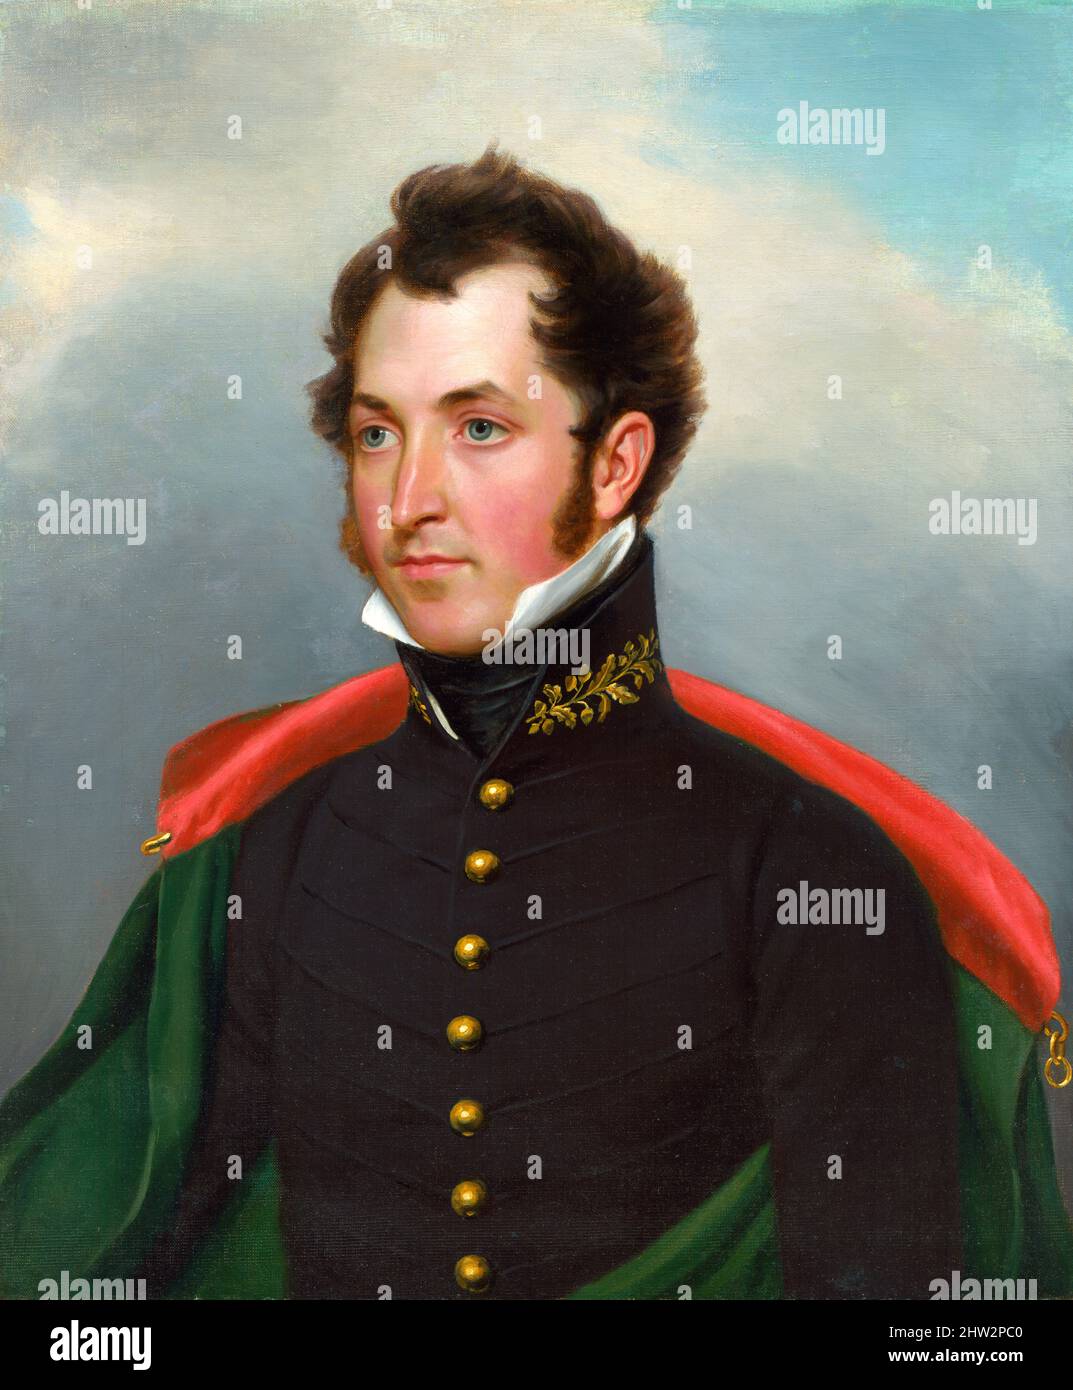 Retrato del oficial de artillería estadounidense, mayor Samuel B. Ringgold (1796-1846) por John Vanderlyn, óleo sobre lienzo, c. 1825 Foto de stock